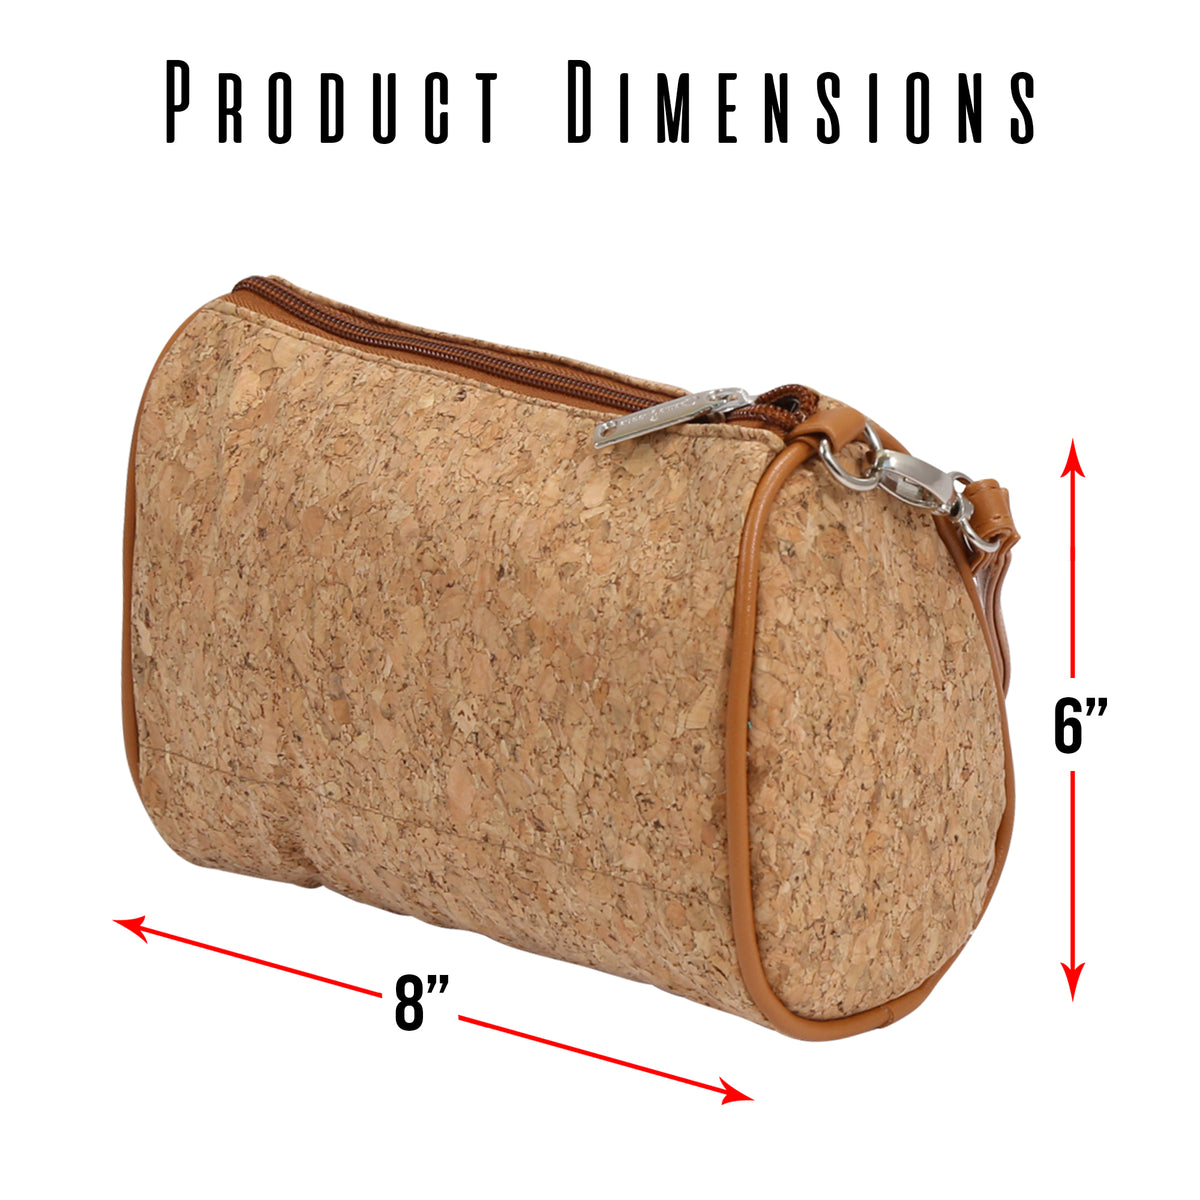 Cosmetic Bag Shirley Temple Design - Primeware Inc.